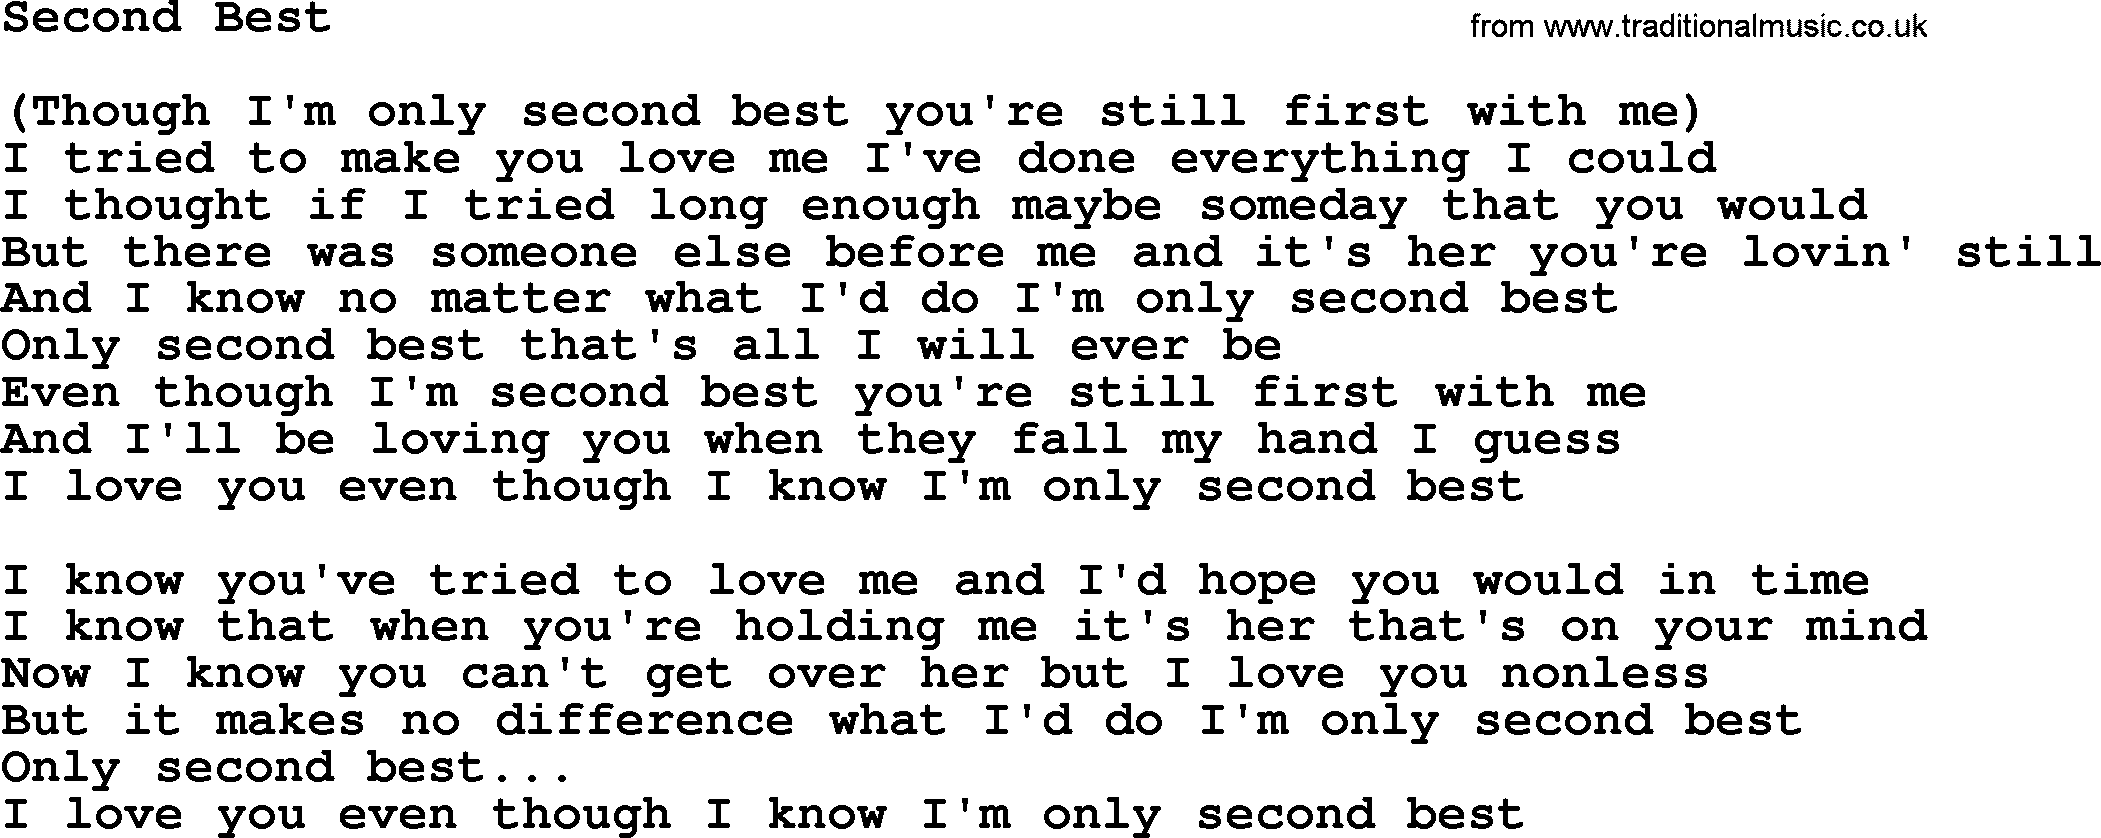 Dolly Parton song Second Best.txt lyrics